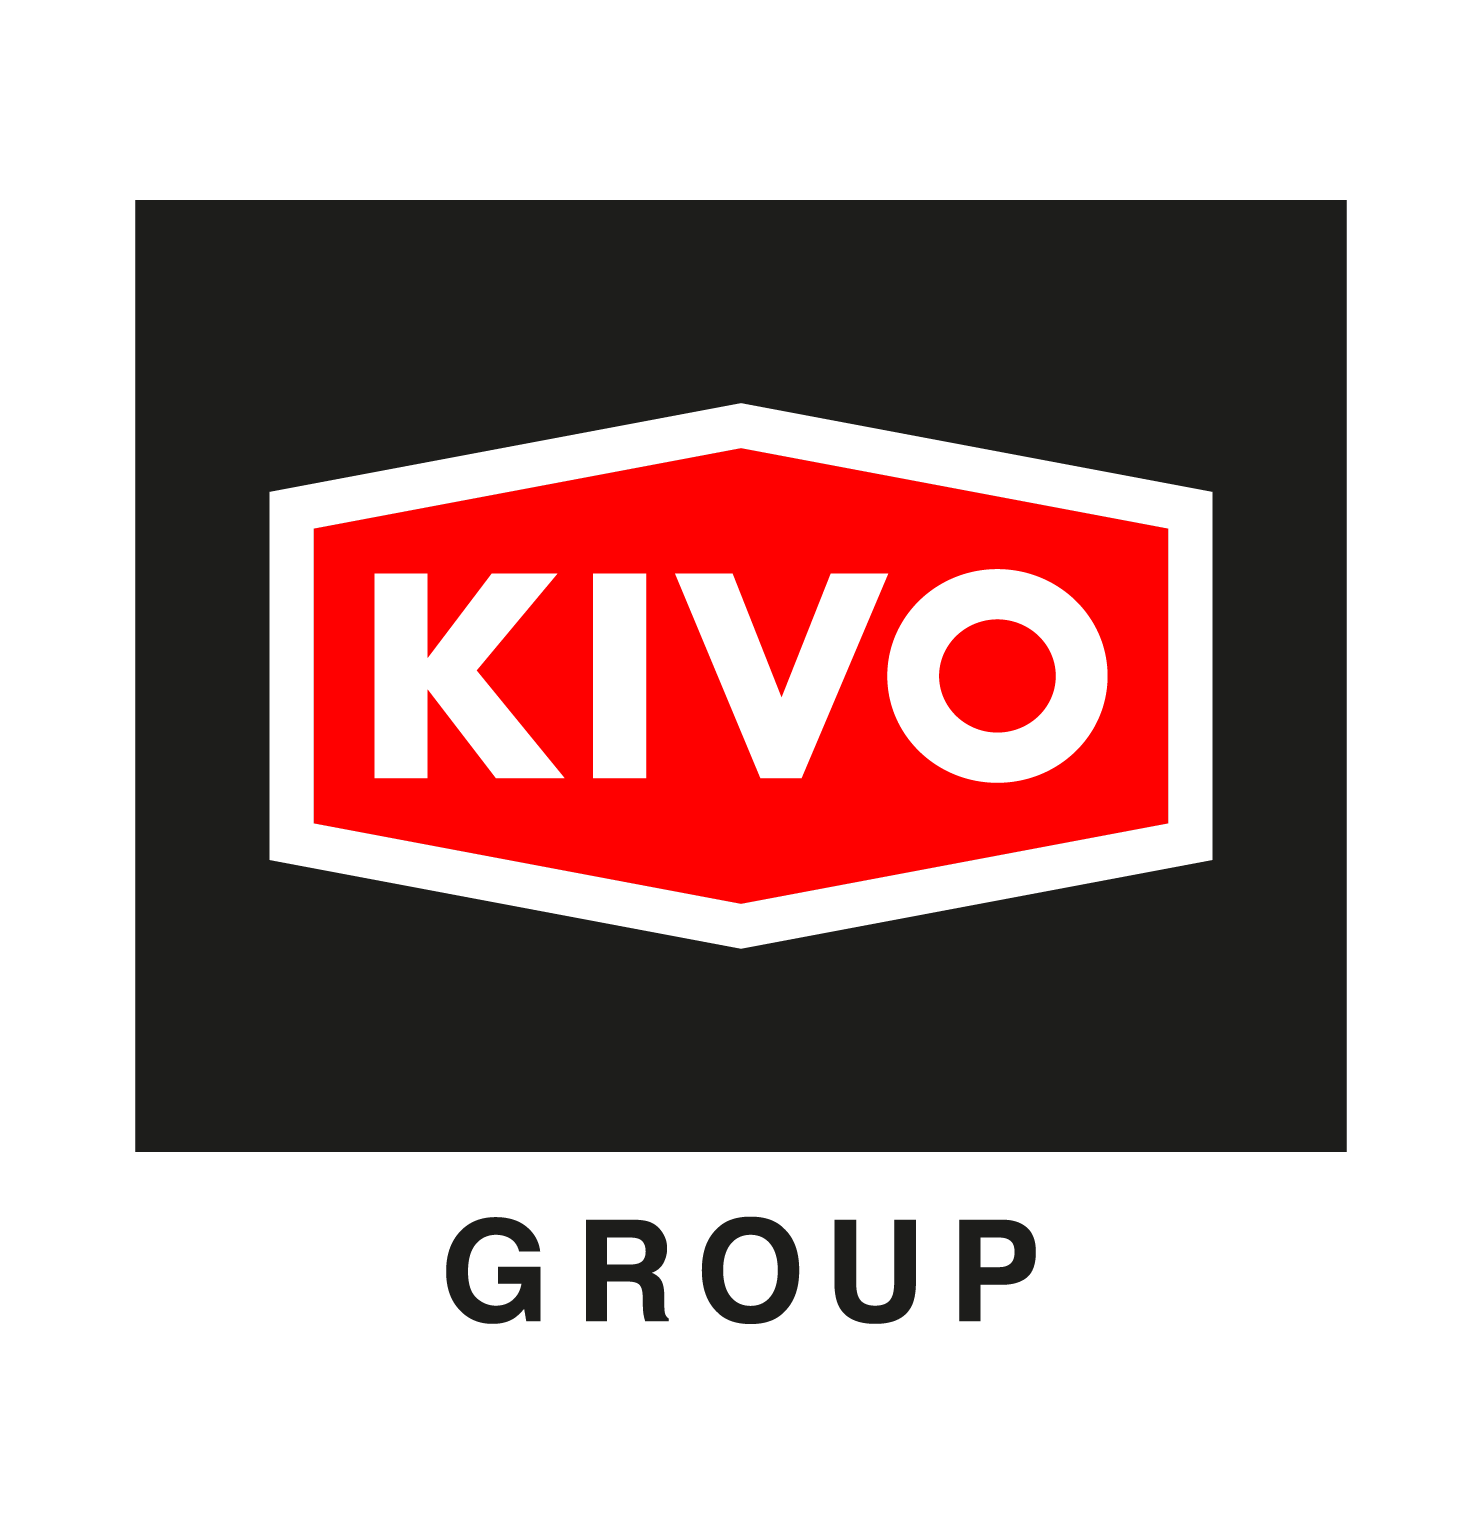 KIVO Group